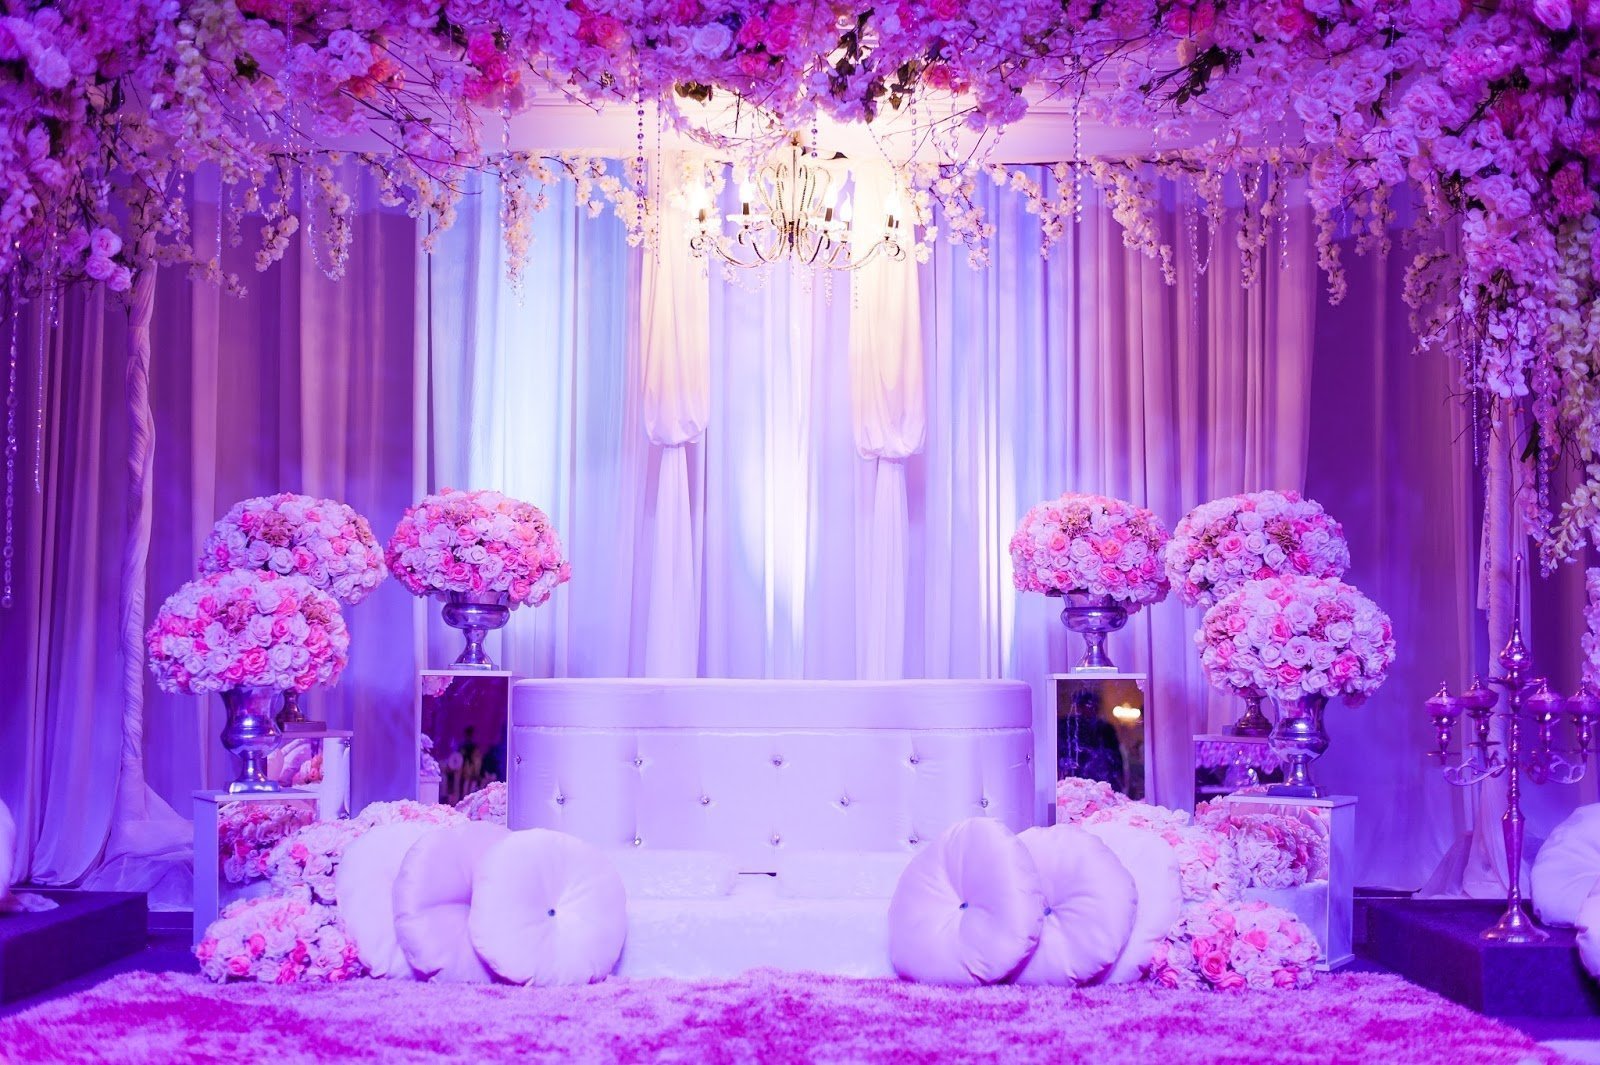 Фиолетовая фотозона. Зал в сиреневом цвете. Свадьба в сиреневых тонах. Украшение зала в фиолетовом цвете. Фотозона на свадьбу в сиреневом цвете.